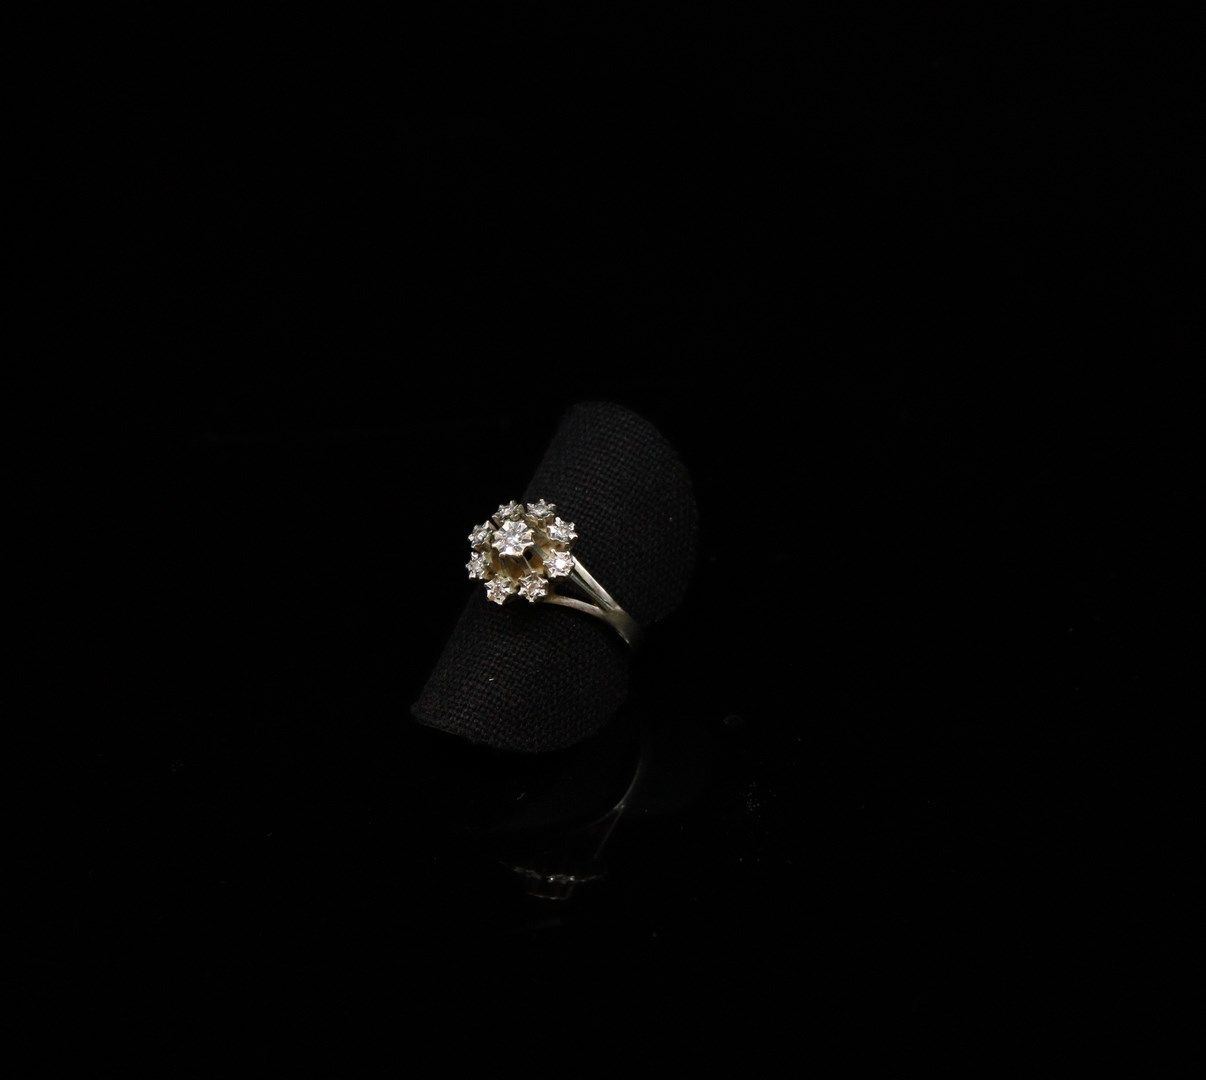 Null Maguerite-Ring aus 18 Karat Weißgold (750), mit Diamantsplittern verziert.
&hellip;